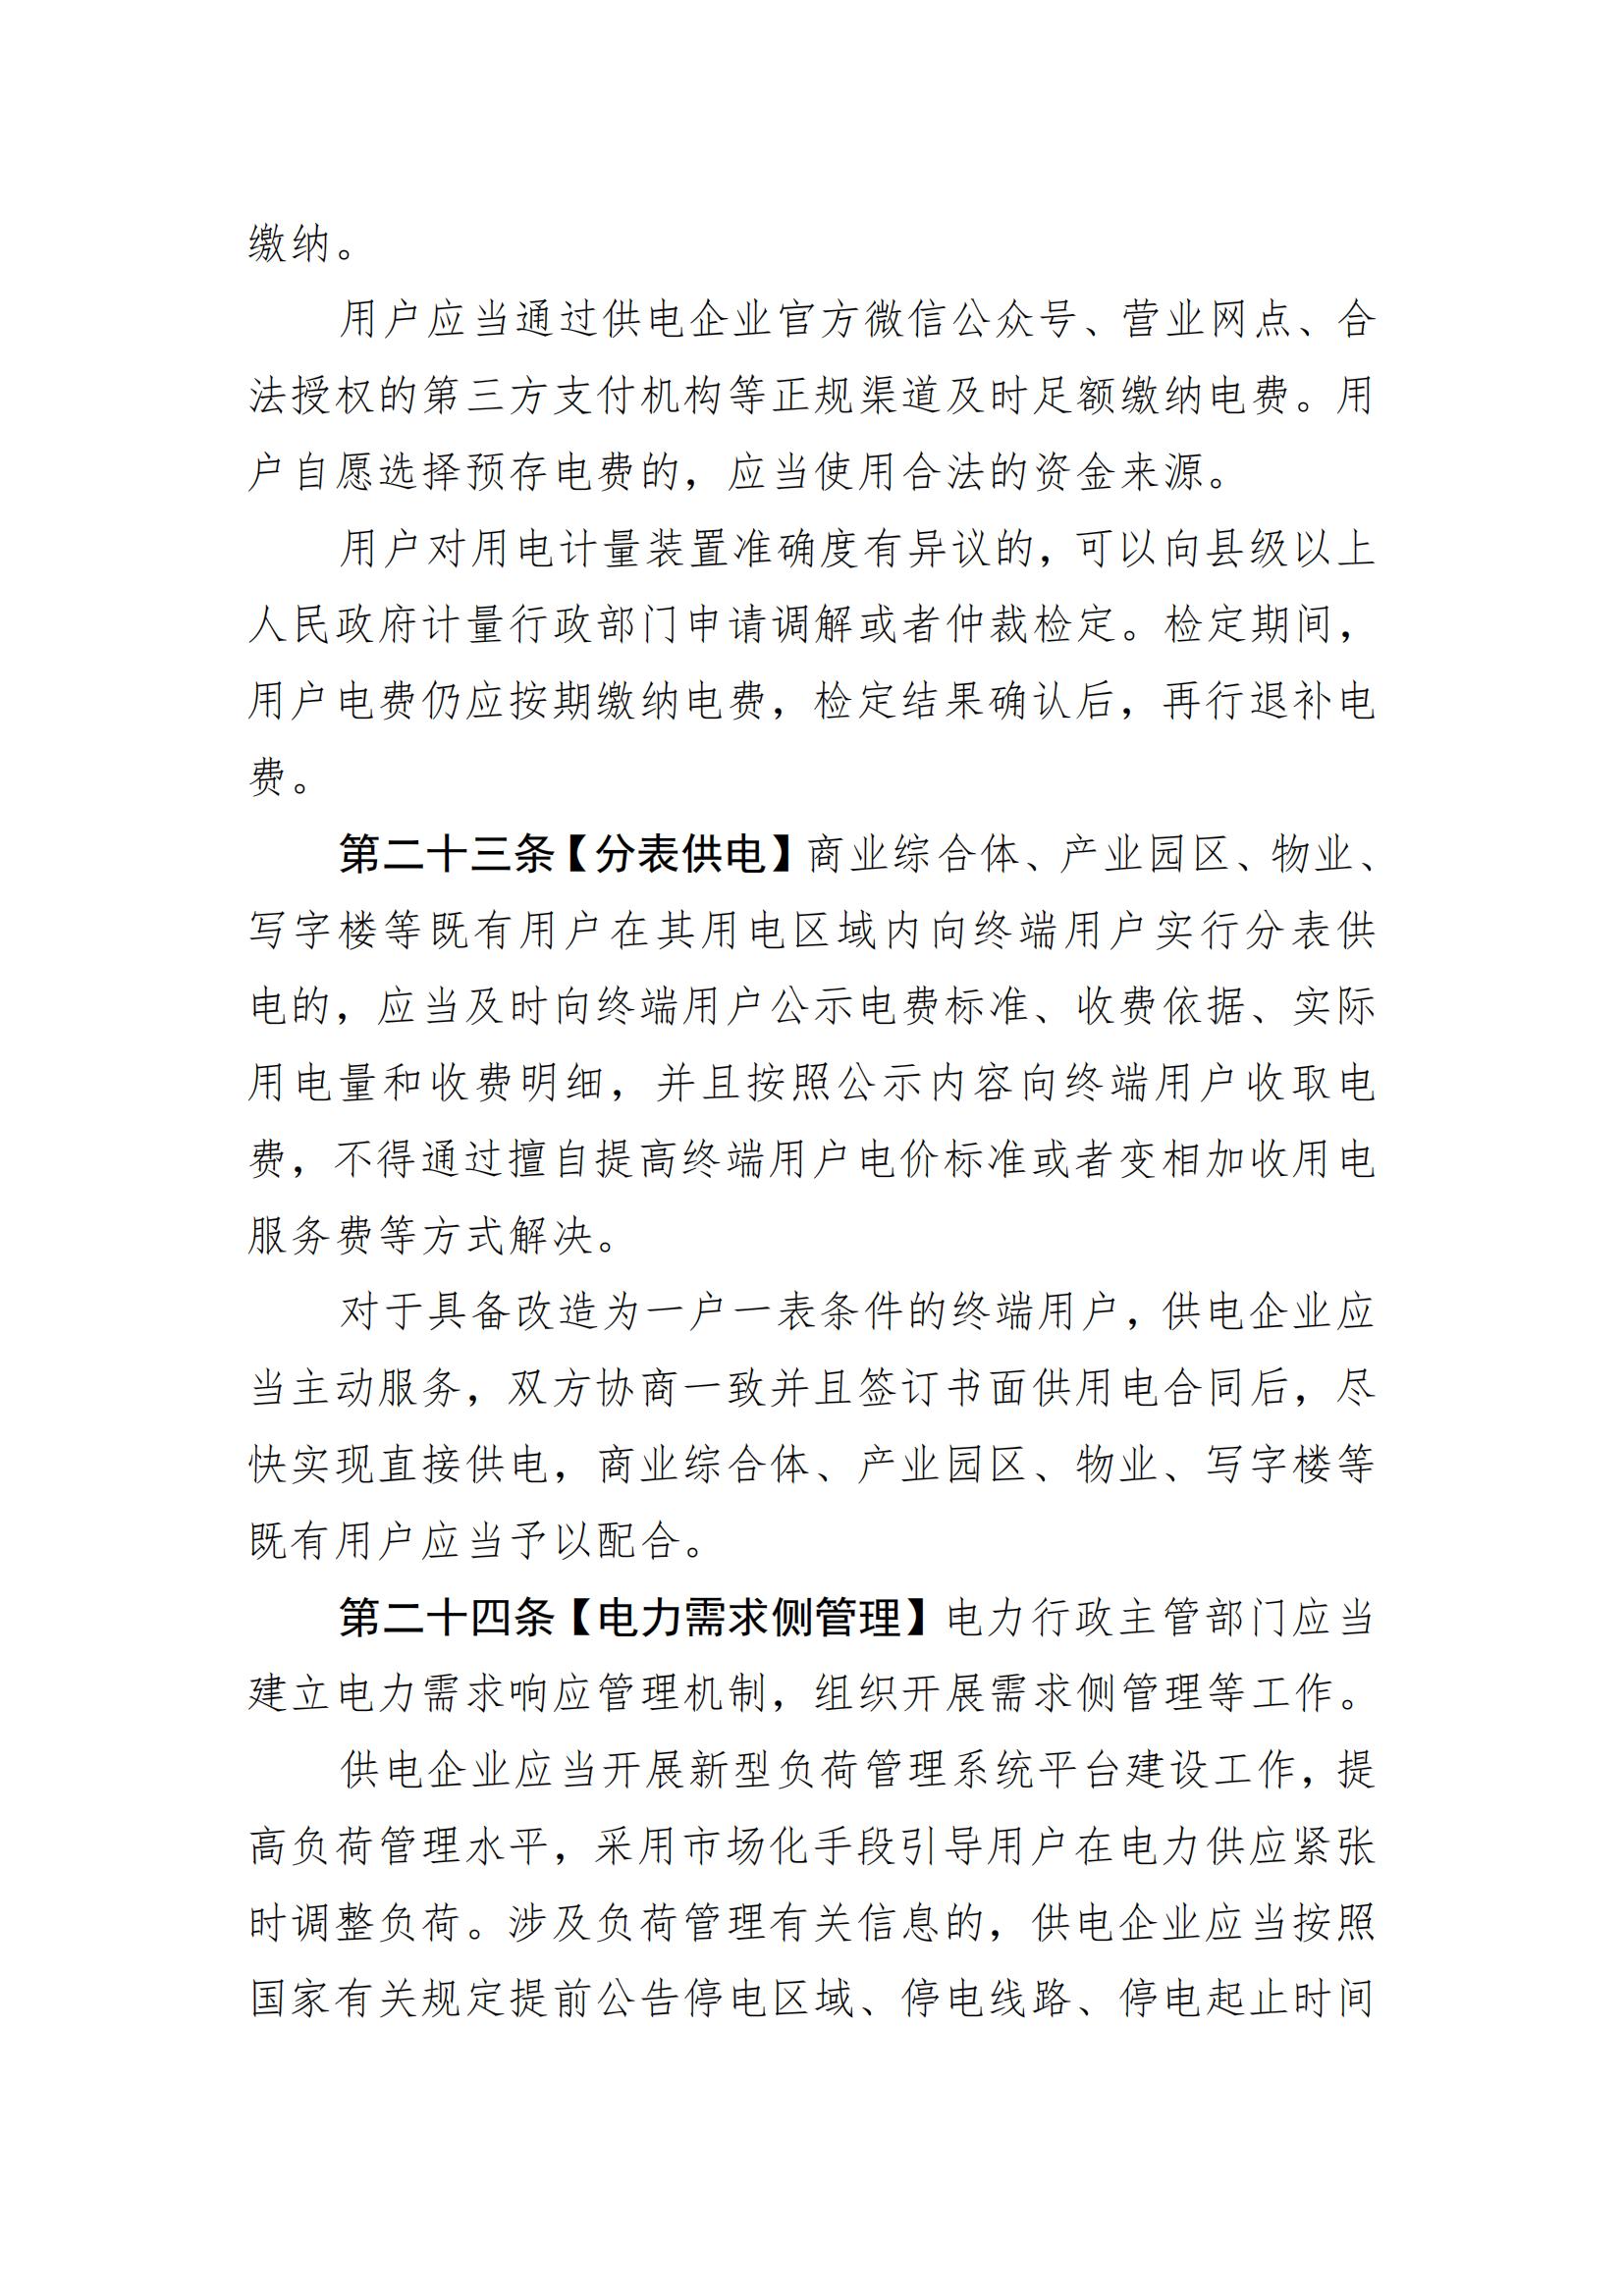 惠州市供用电条例（草案）（征求意见稿）_09.jpg